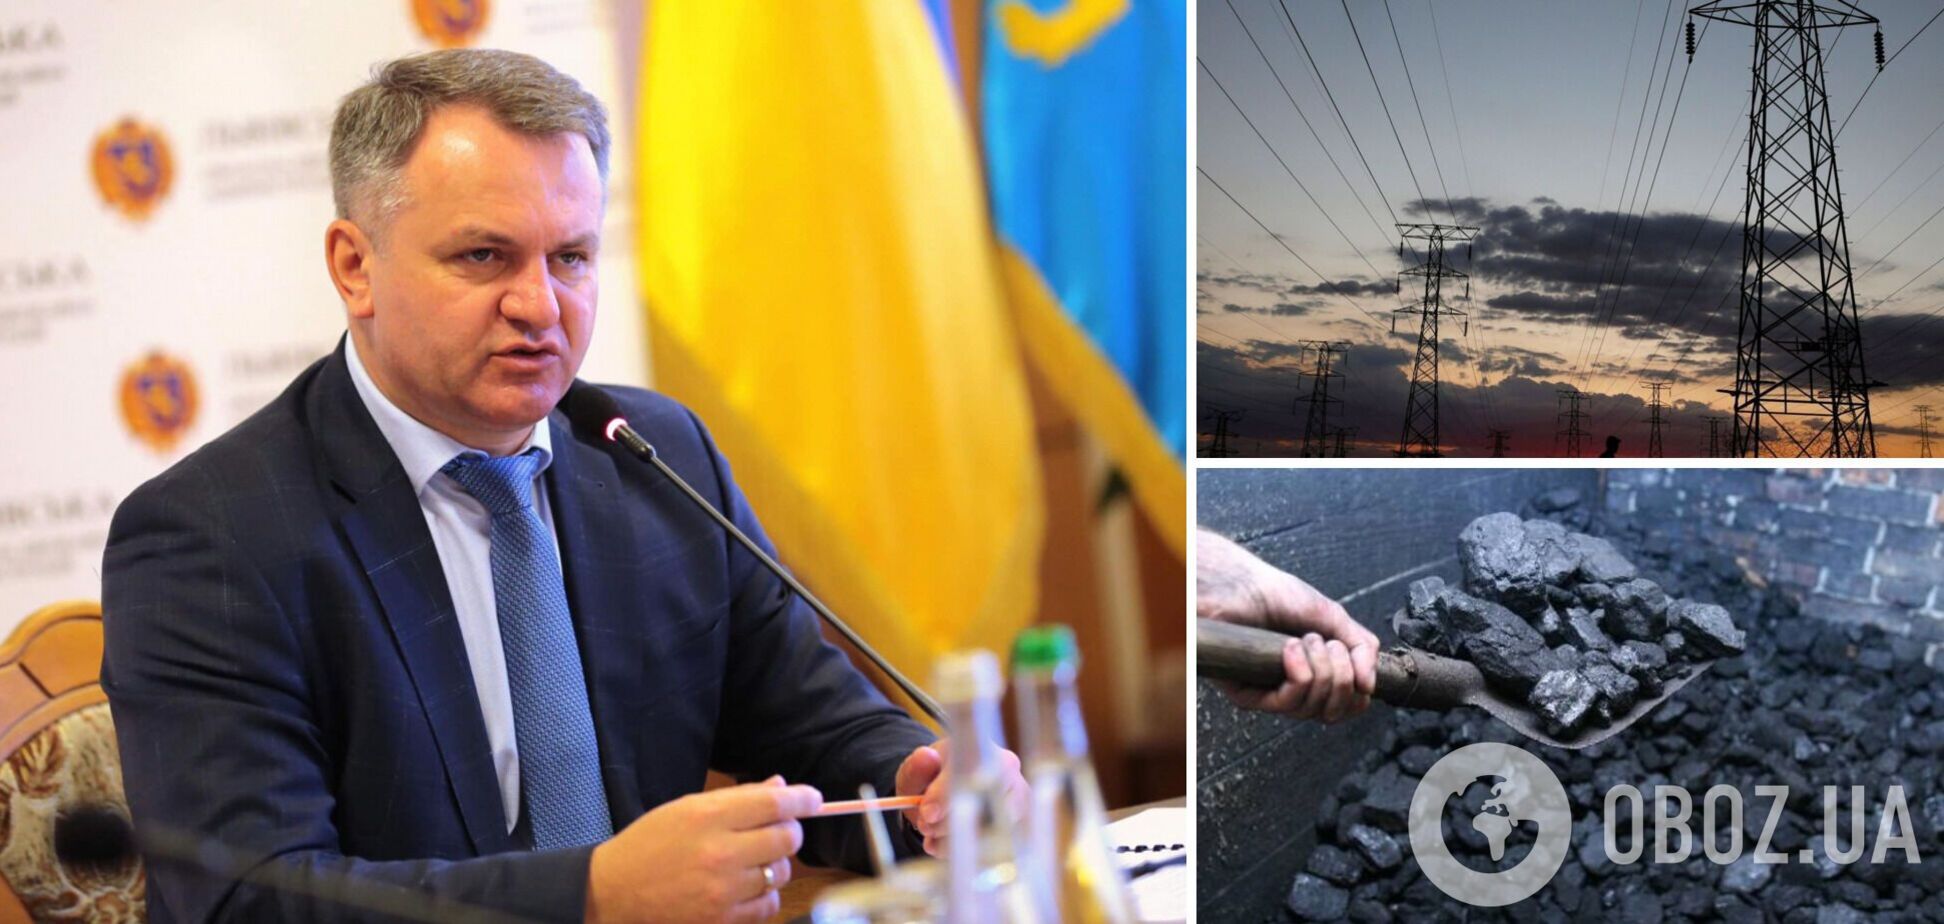 Україна опинилася в енергетичній кризі, наголосив Синютка і назвав причини